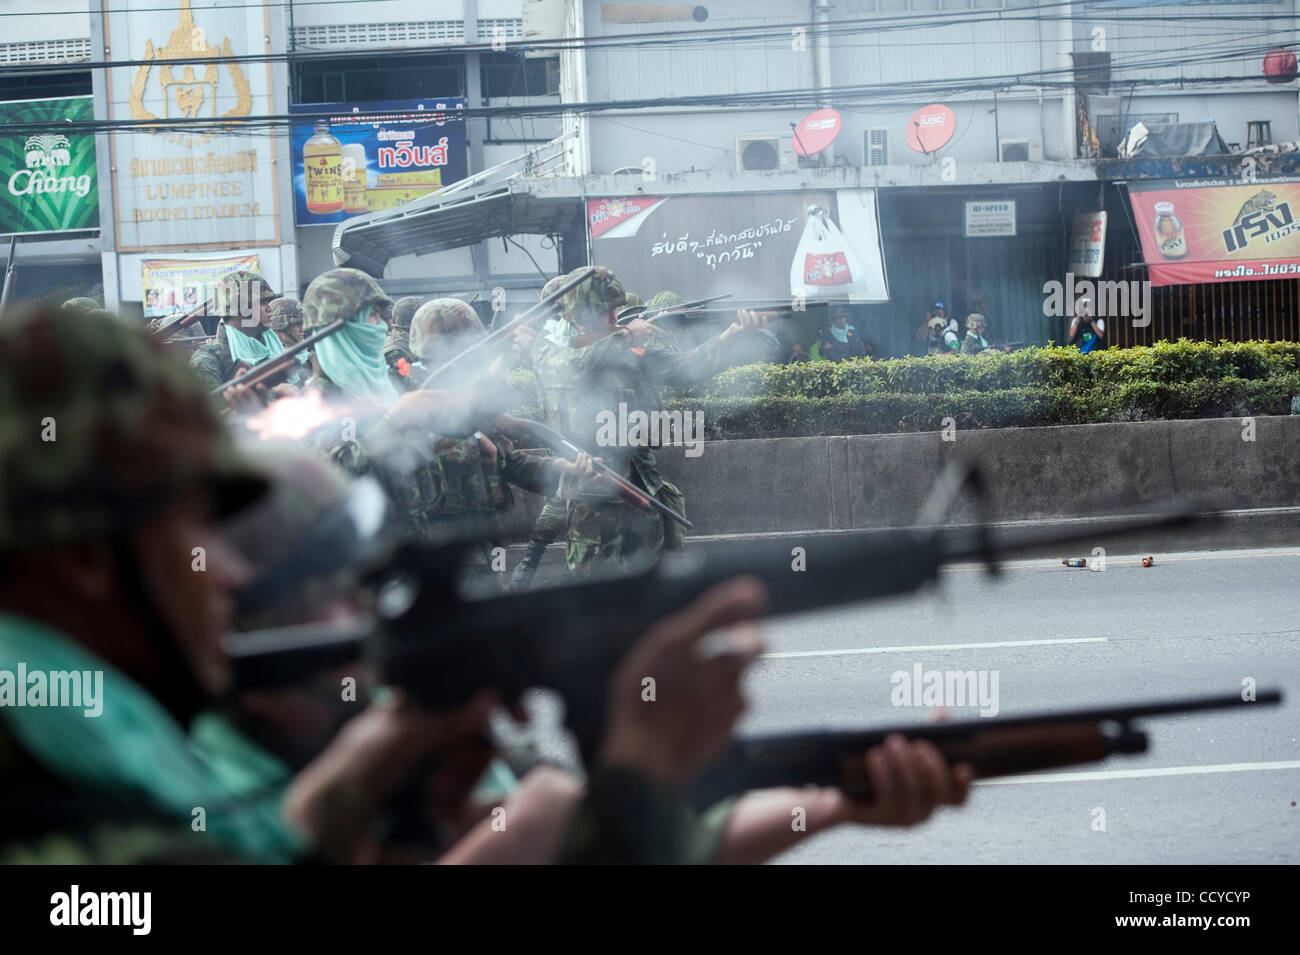 14 mai 2010 - Bangkok, Bangkok, Thaïlande - Des soldats ouvrent le feu à la chemise rouge manifestants..chemise rouge de manifestants dans la capitale thaïlandaise avaient leur sol vendredi, que le gouvernement va de l'initiale du jour au lendemain de leur blocus ont montré aucun résultat, au lieu de déclencher la violence sporadique et éparpillés autour de prot Banque D'Images